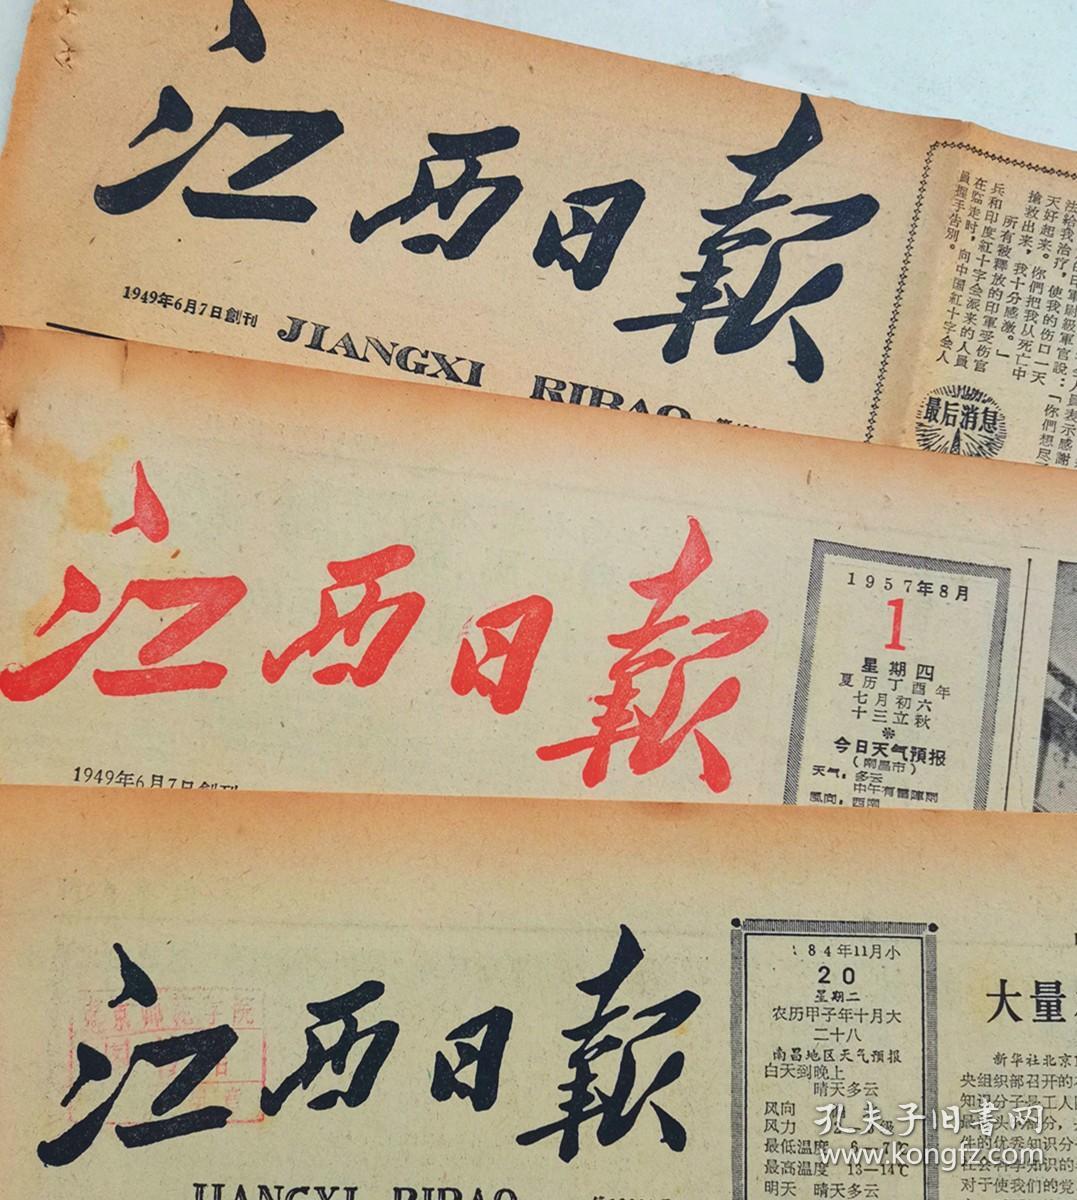 1969年4月25日江西日报